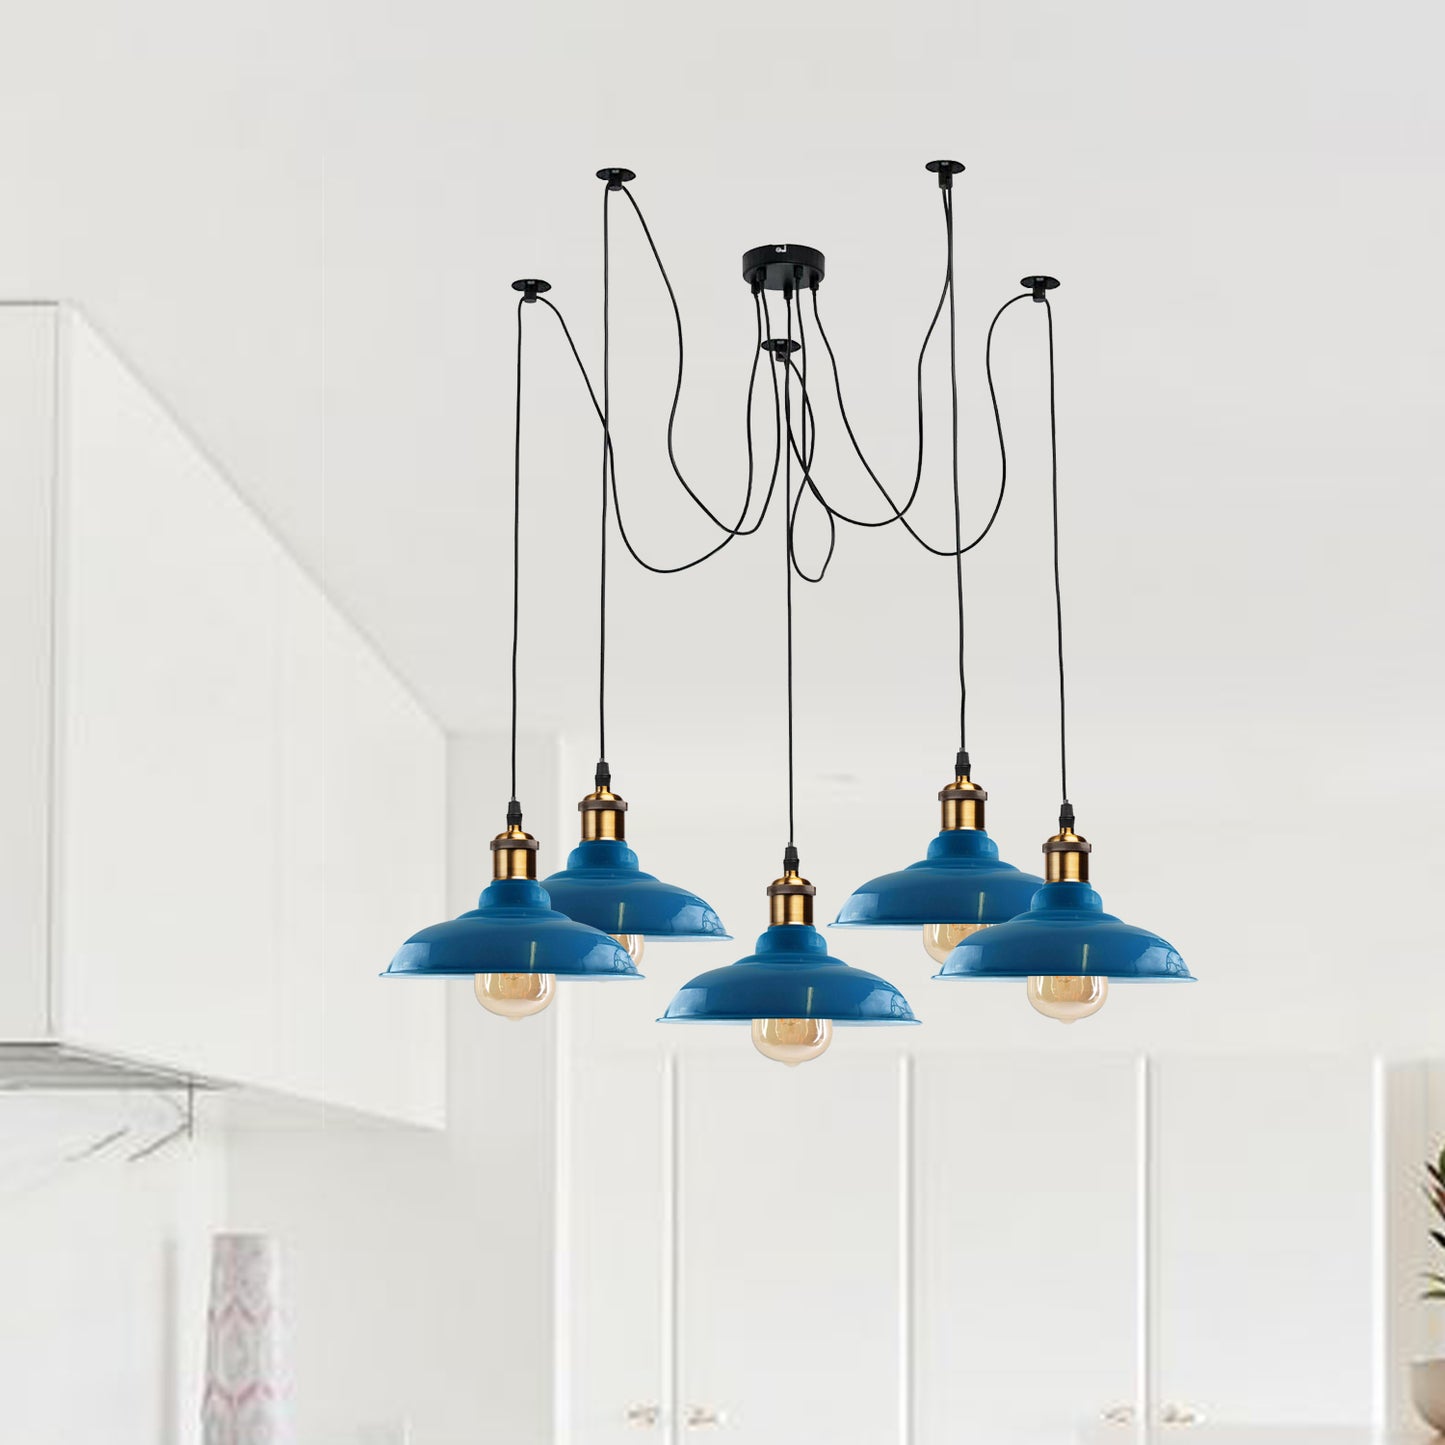 5 Way Vintage Chandelier Spider Ceiling Indoor Lamp Fixture Metal Curvy Shade Light Blue~2214